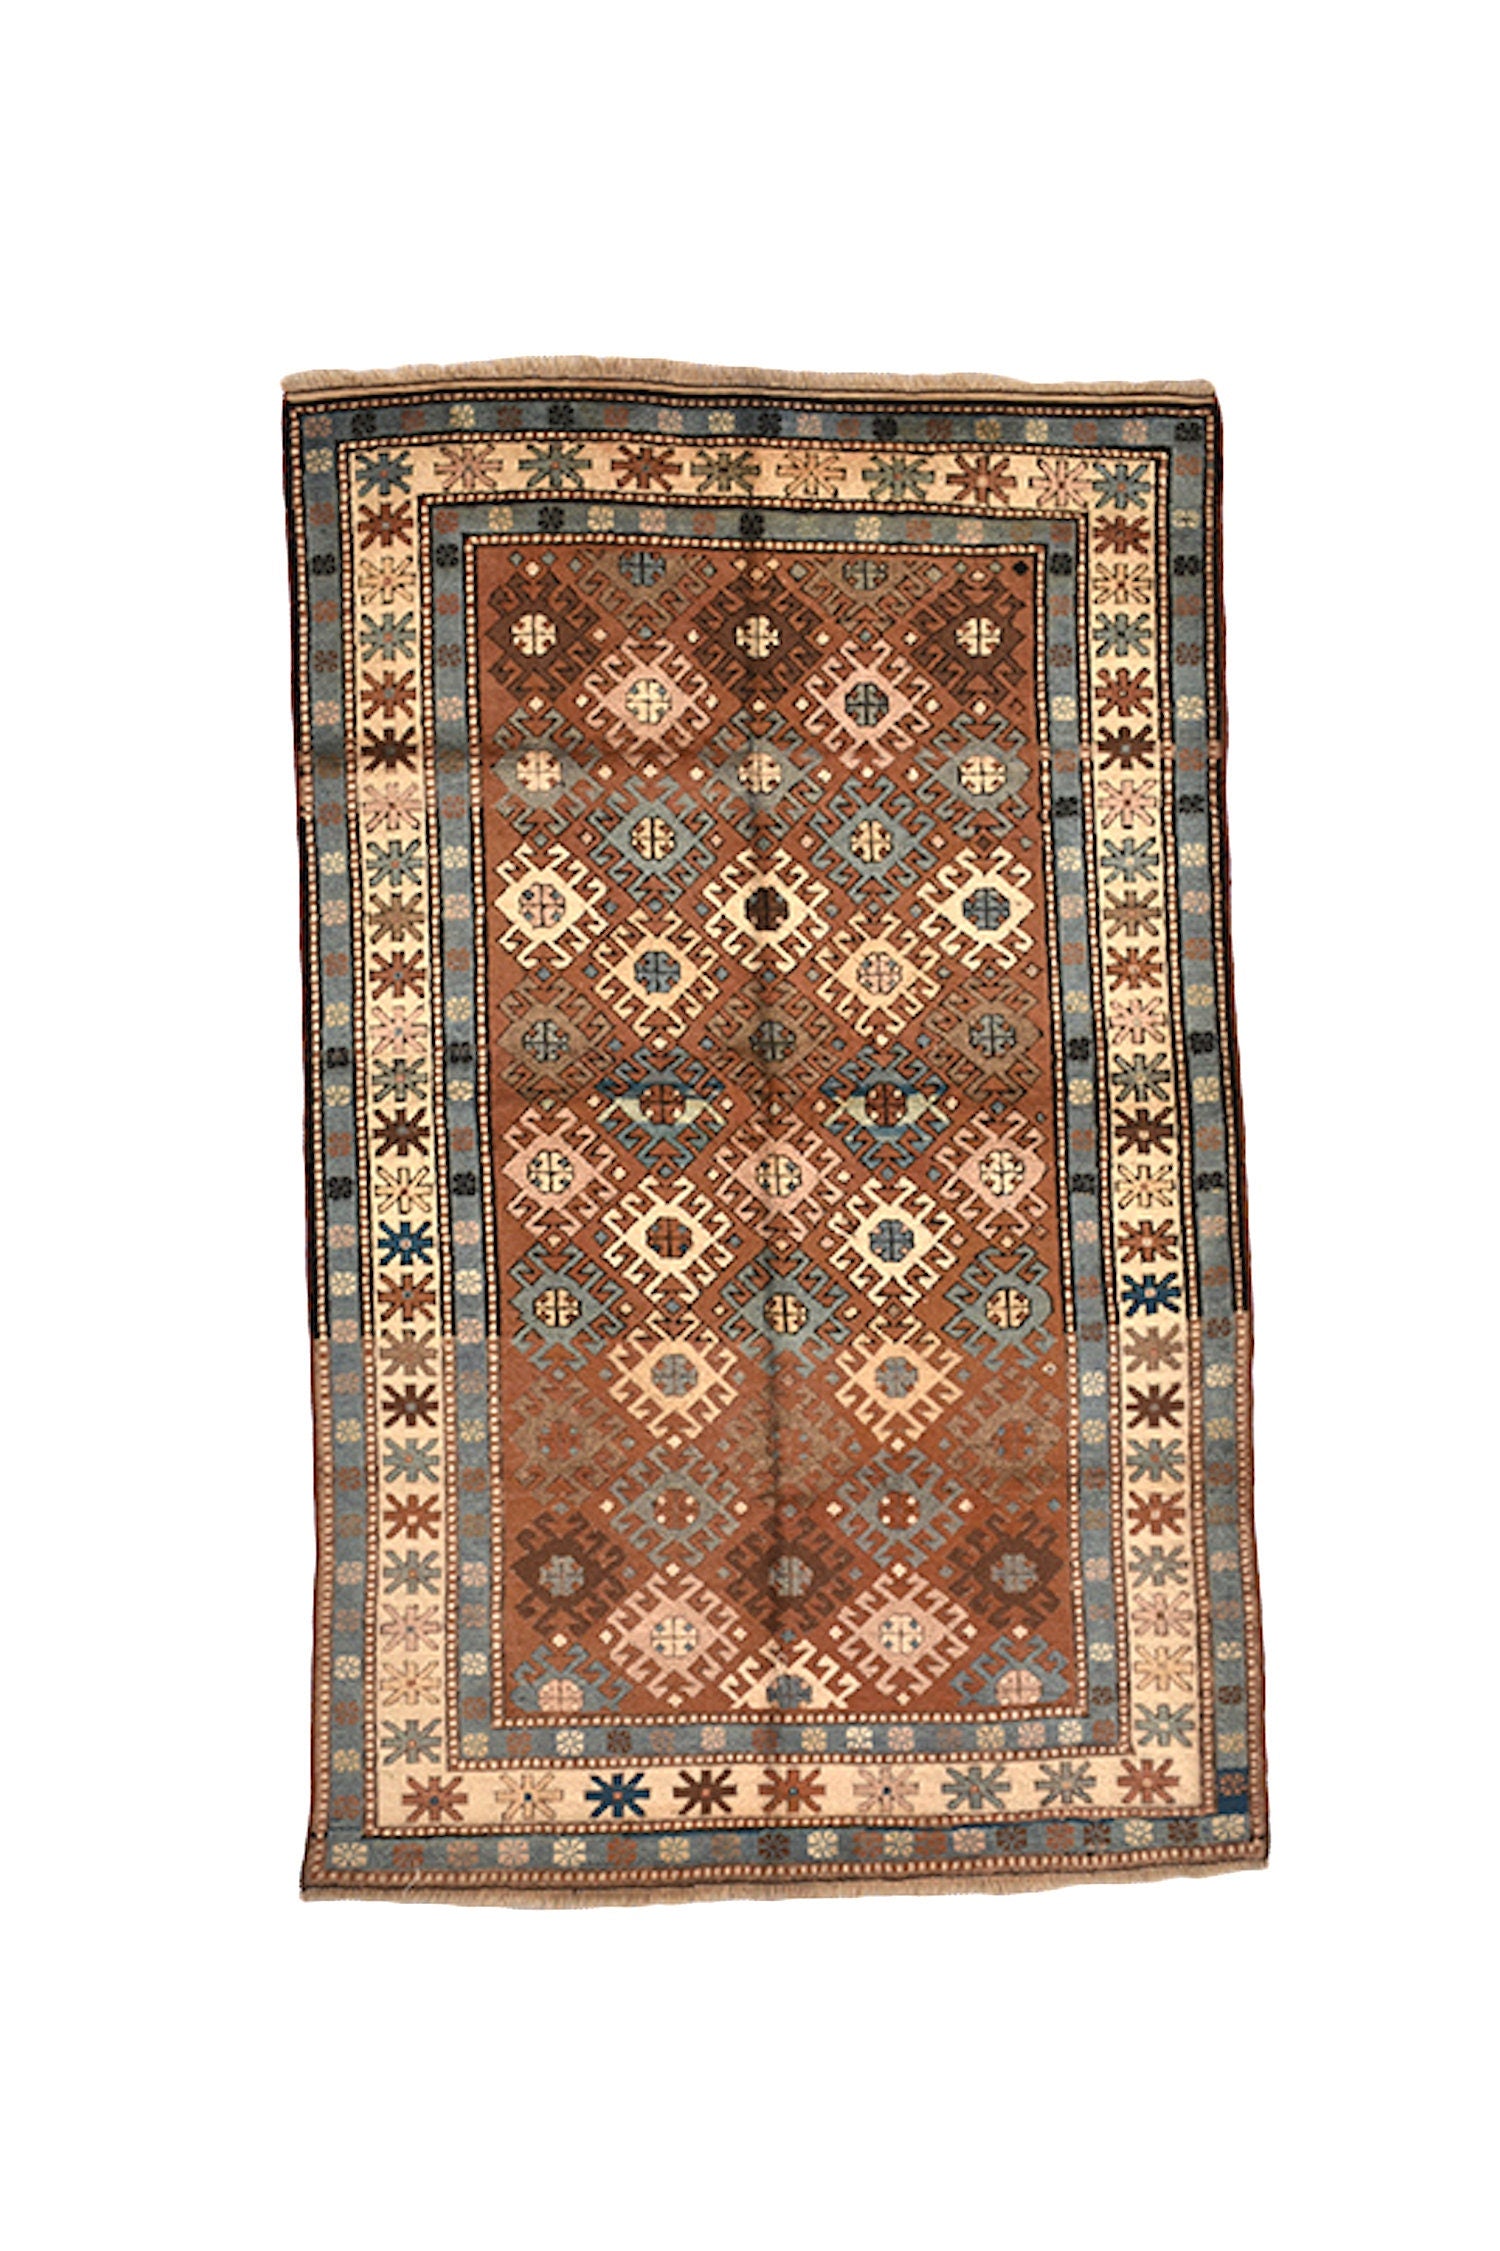 7.3 x 4.6 Feet Hand knotted rug, Brown & teal rug, Vintage geometric rug, Rustic nomadic rug, Eclectic Wool Antique Rug